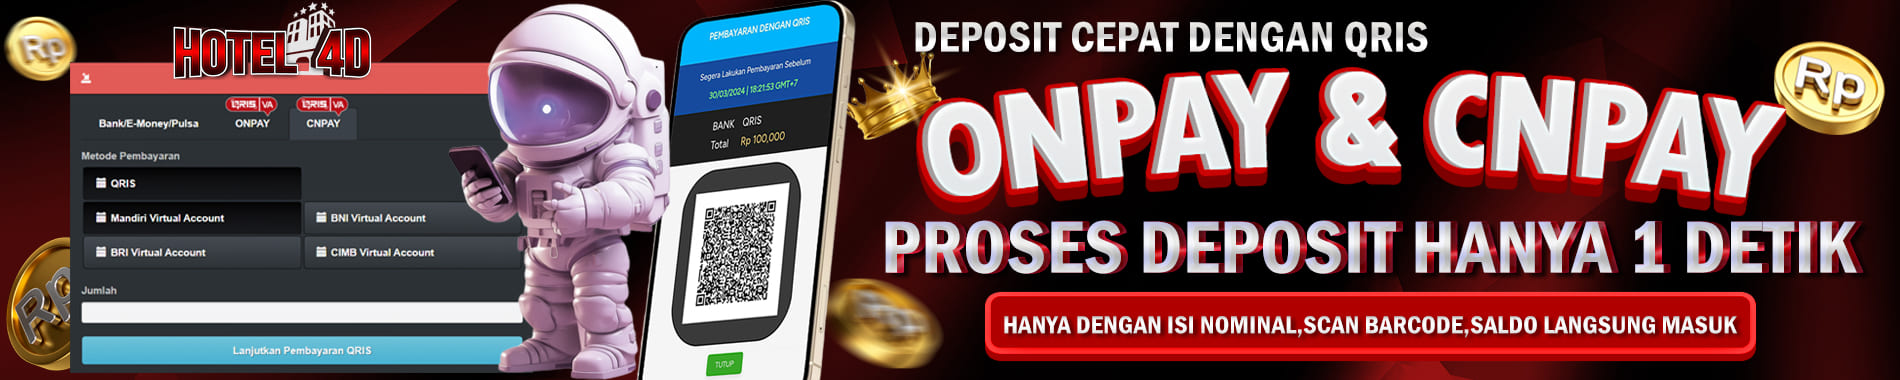 hotel4d deposit cepat dengan onpay dan cnpay